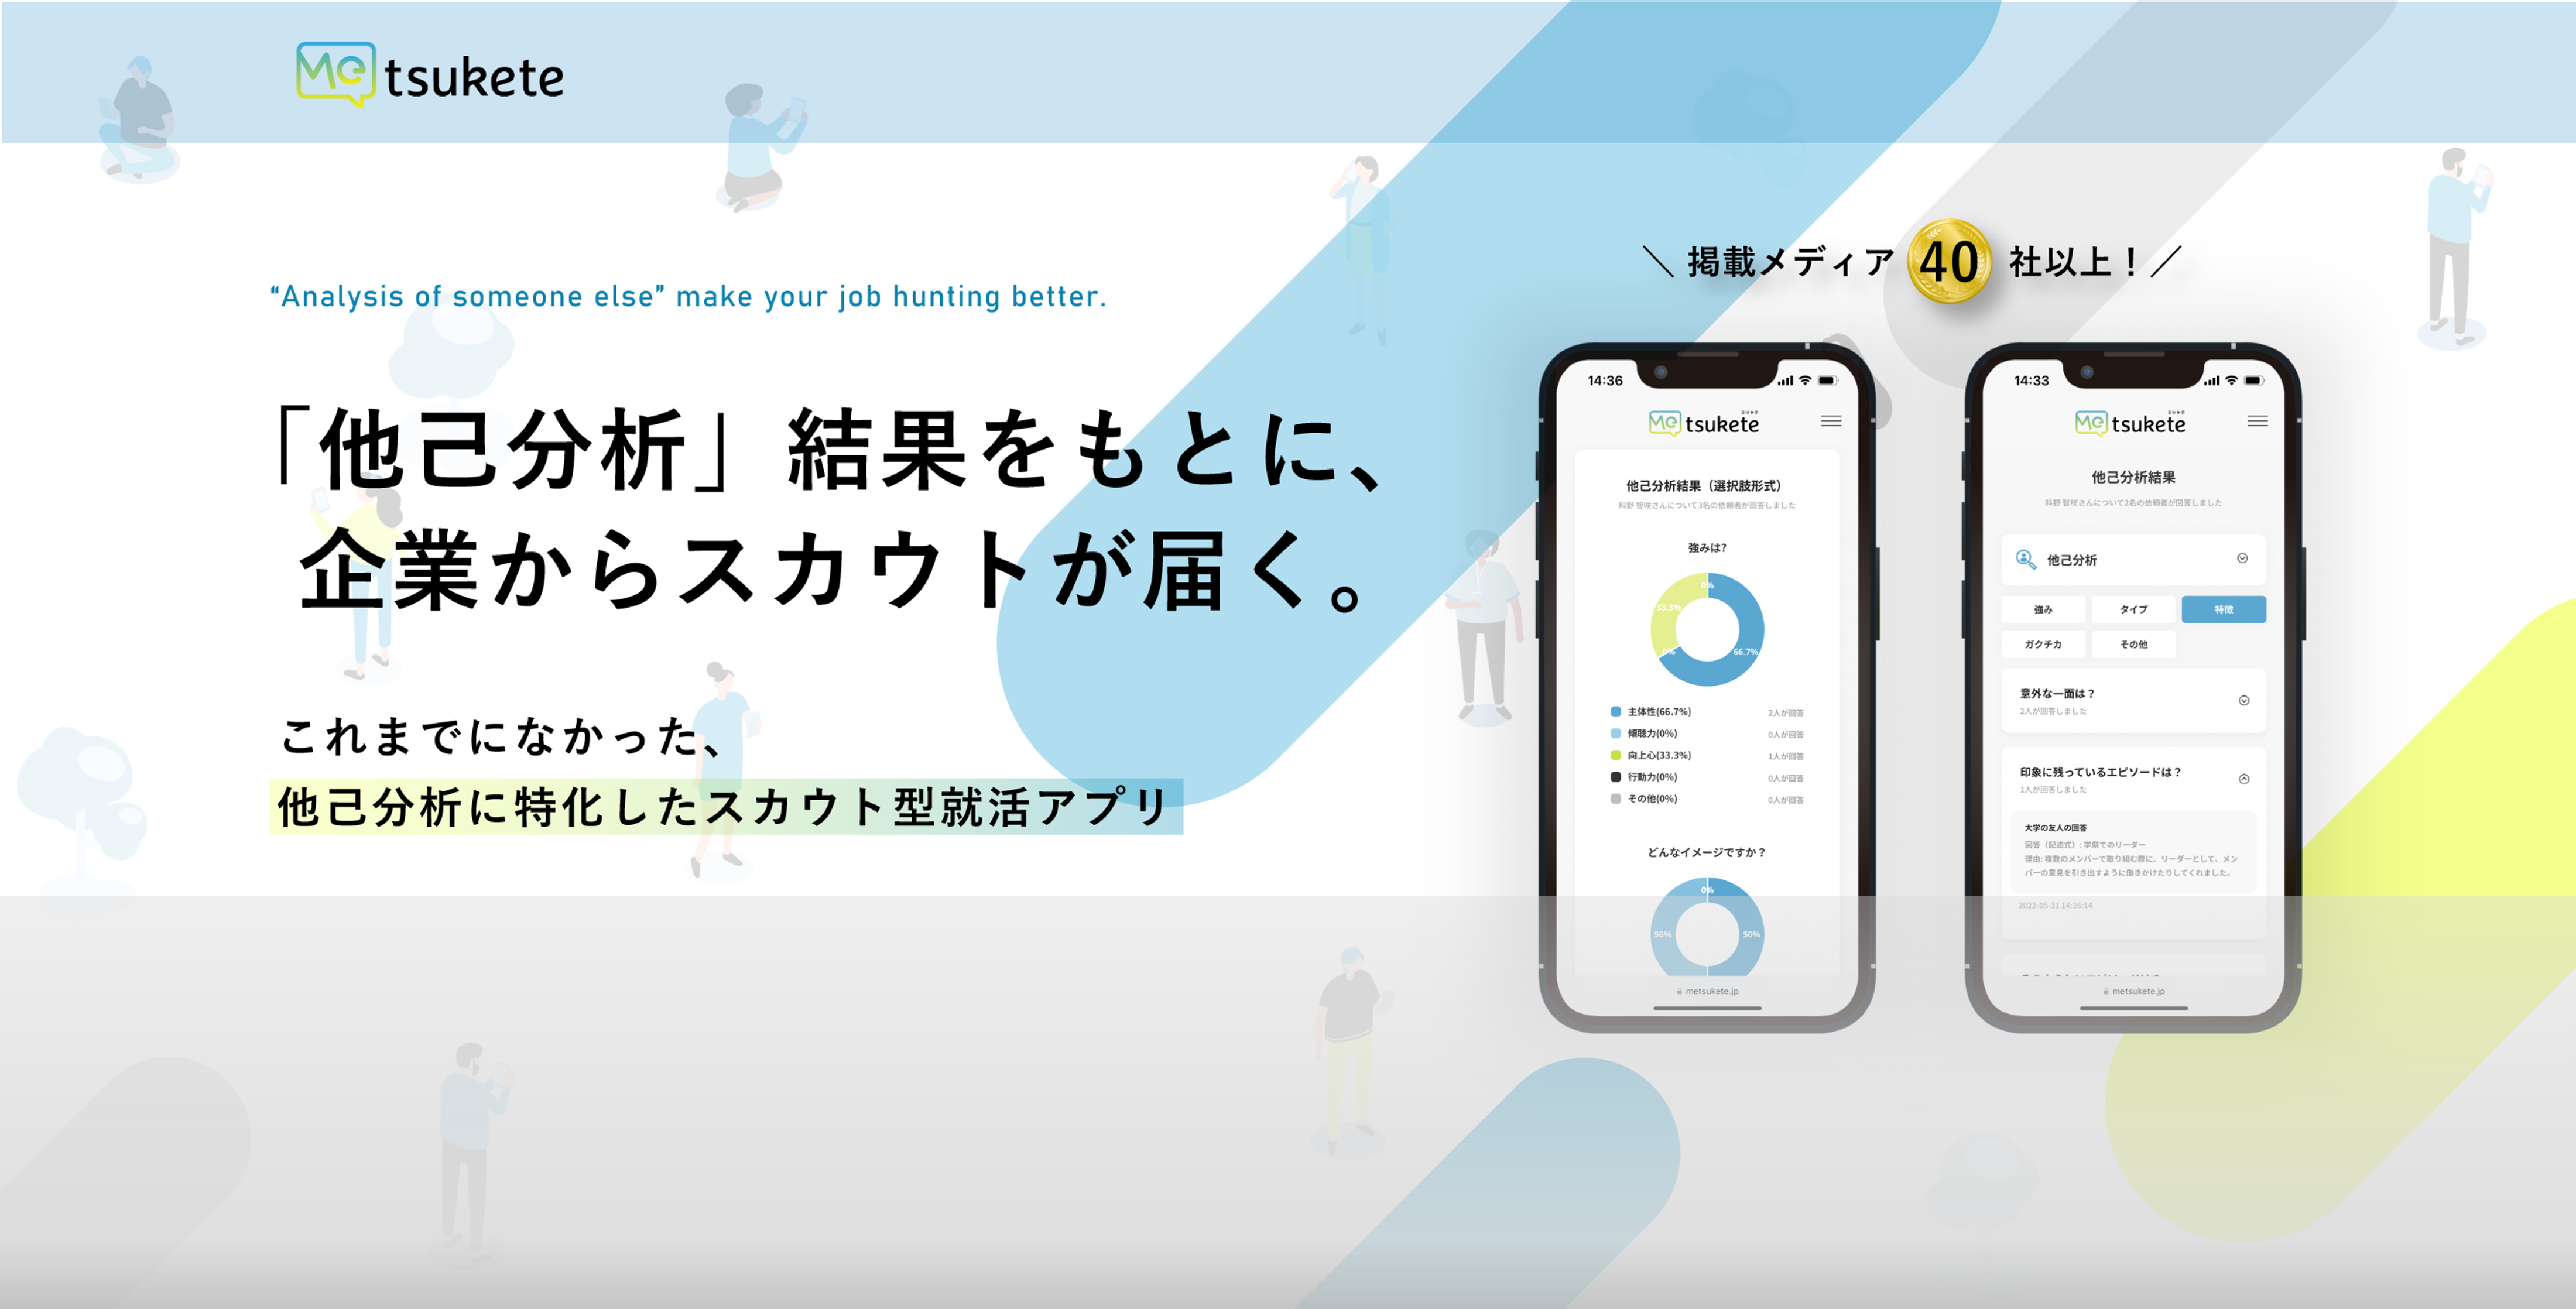 弊社開発のスカウト型就活アプリ「Metsukete（ミツケテ）」が24卒の就活生向けに先行リリースされました